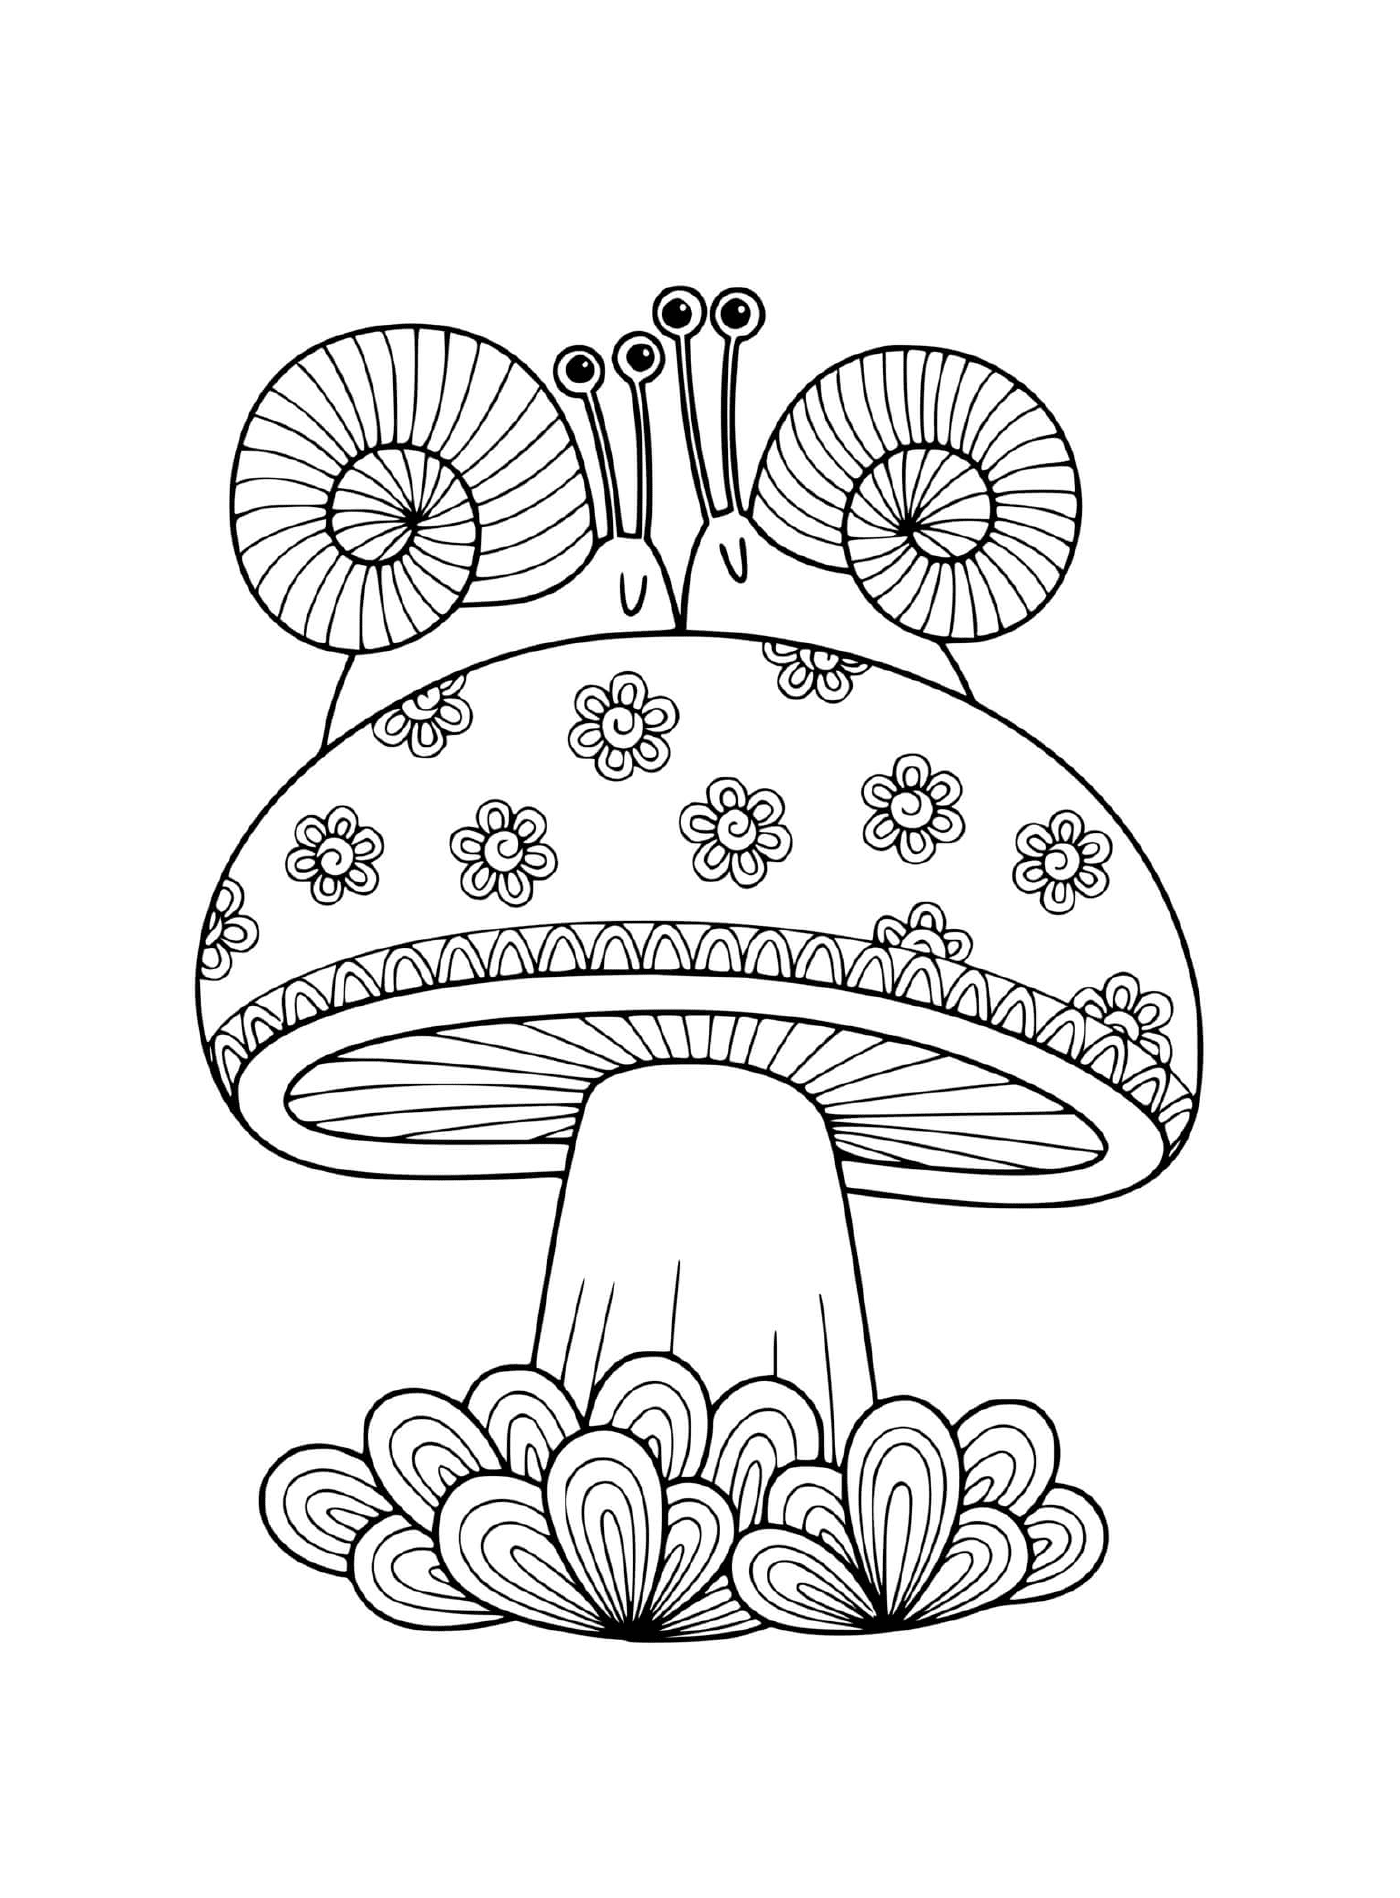  由两只蜗牛包围的成人蘑菇 